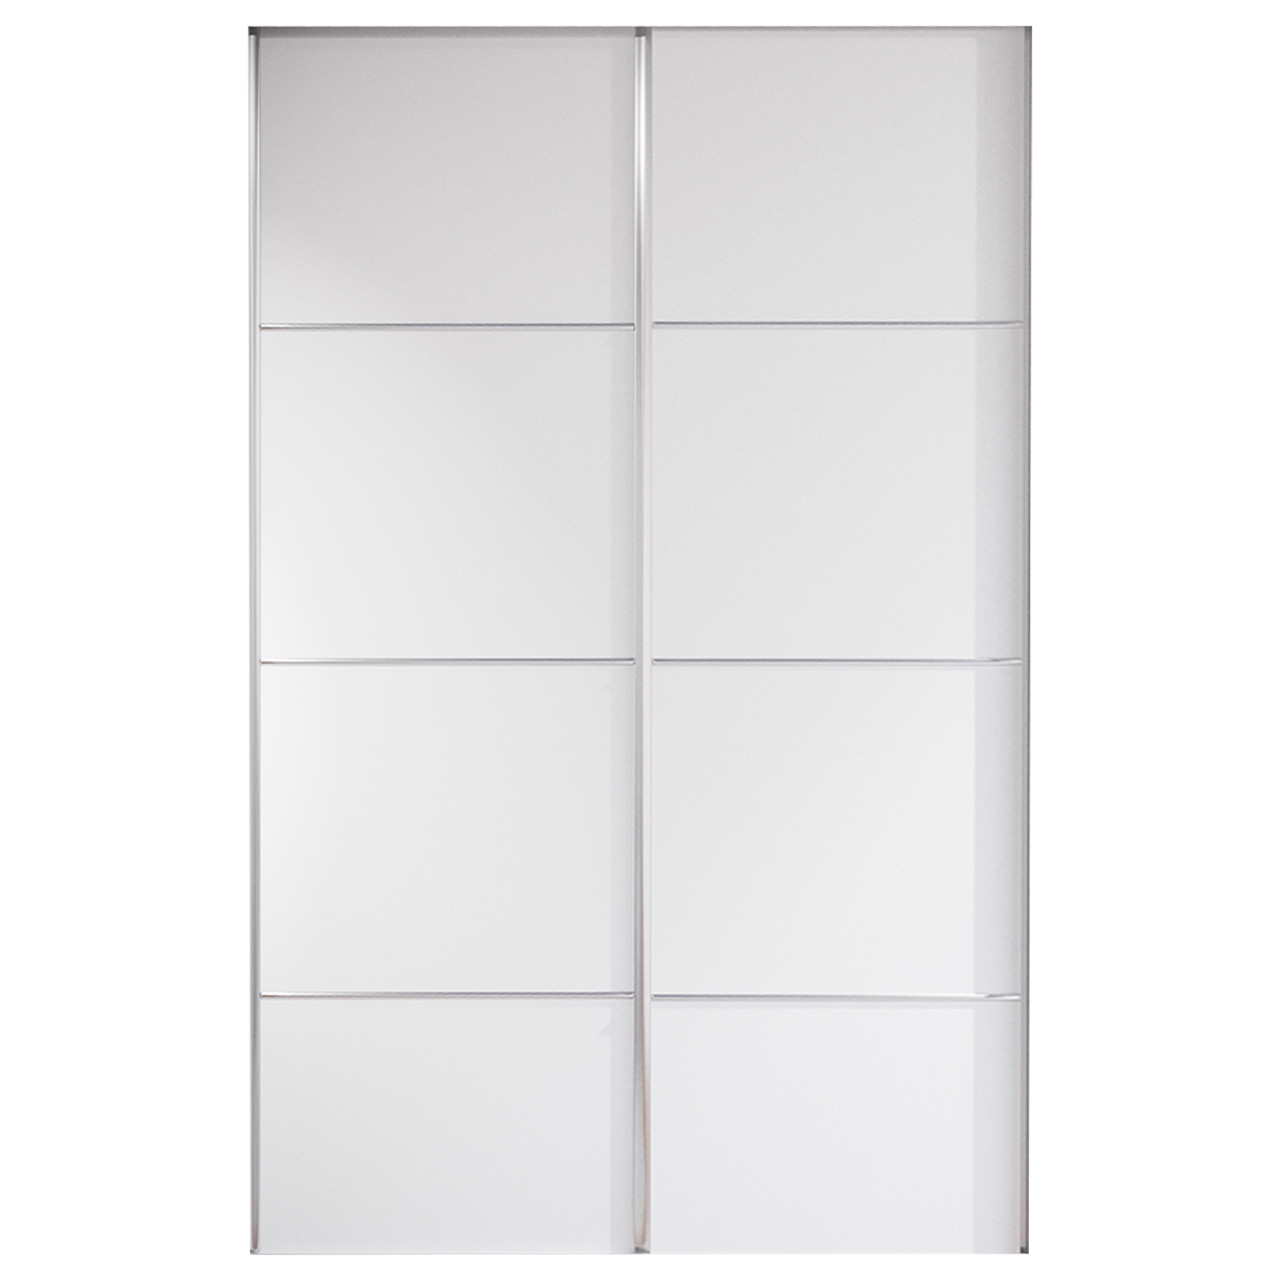 Sliding door for wardrobe MERV F3 120 white